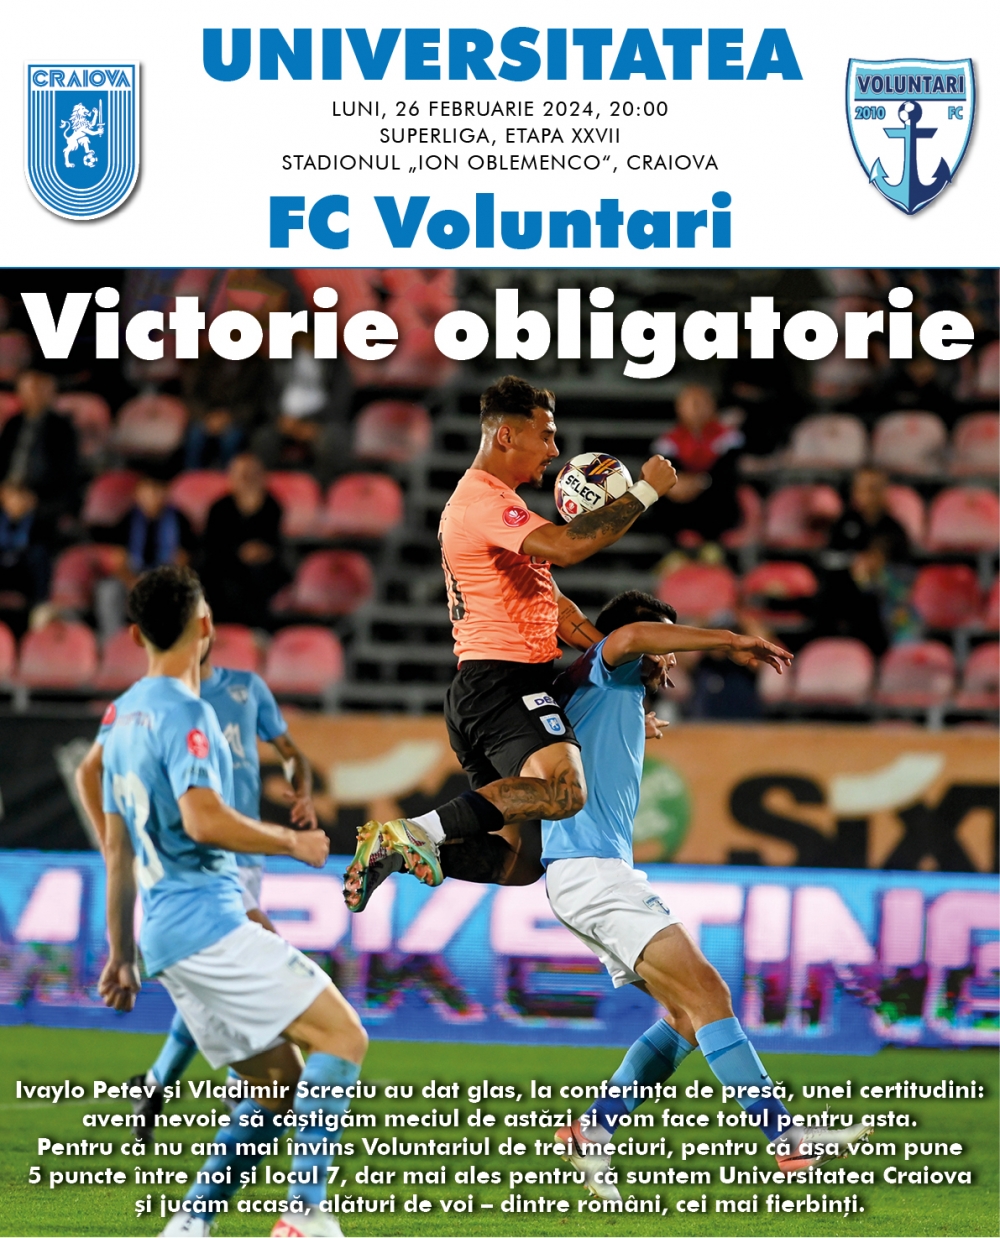 Programul de meci cu FC Voluntari, în format digital